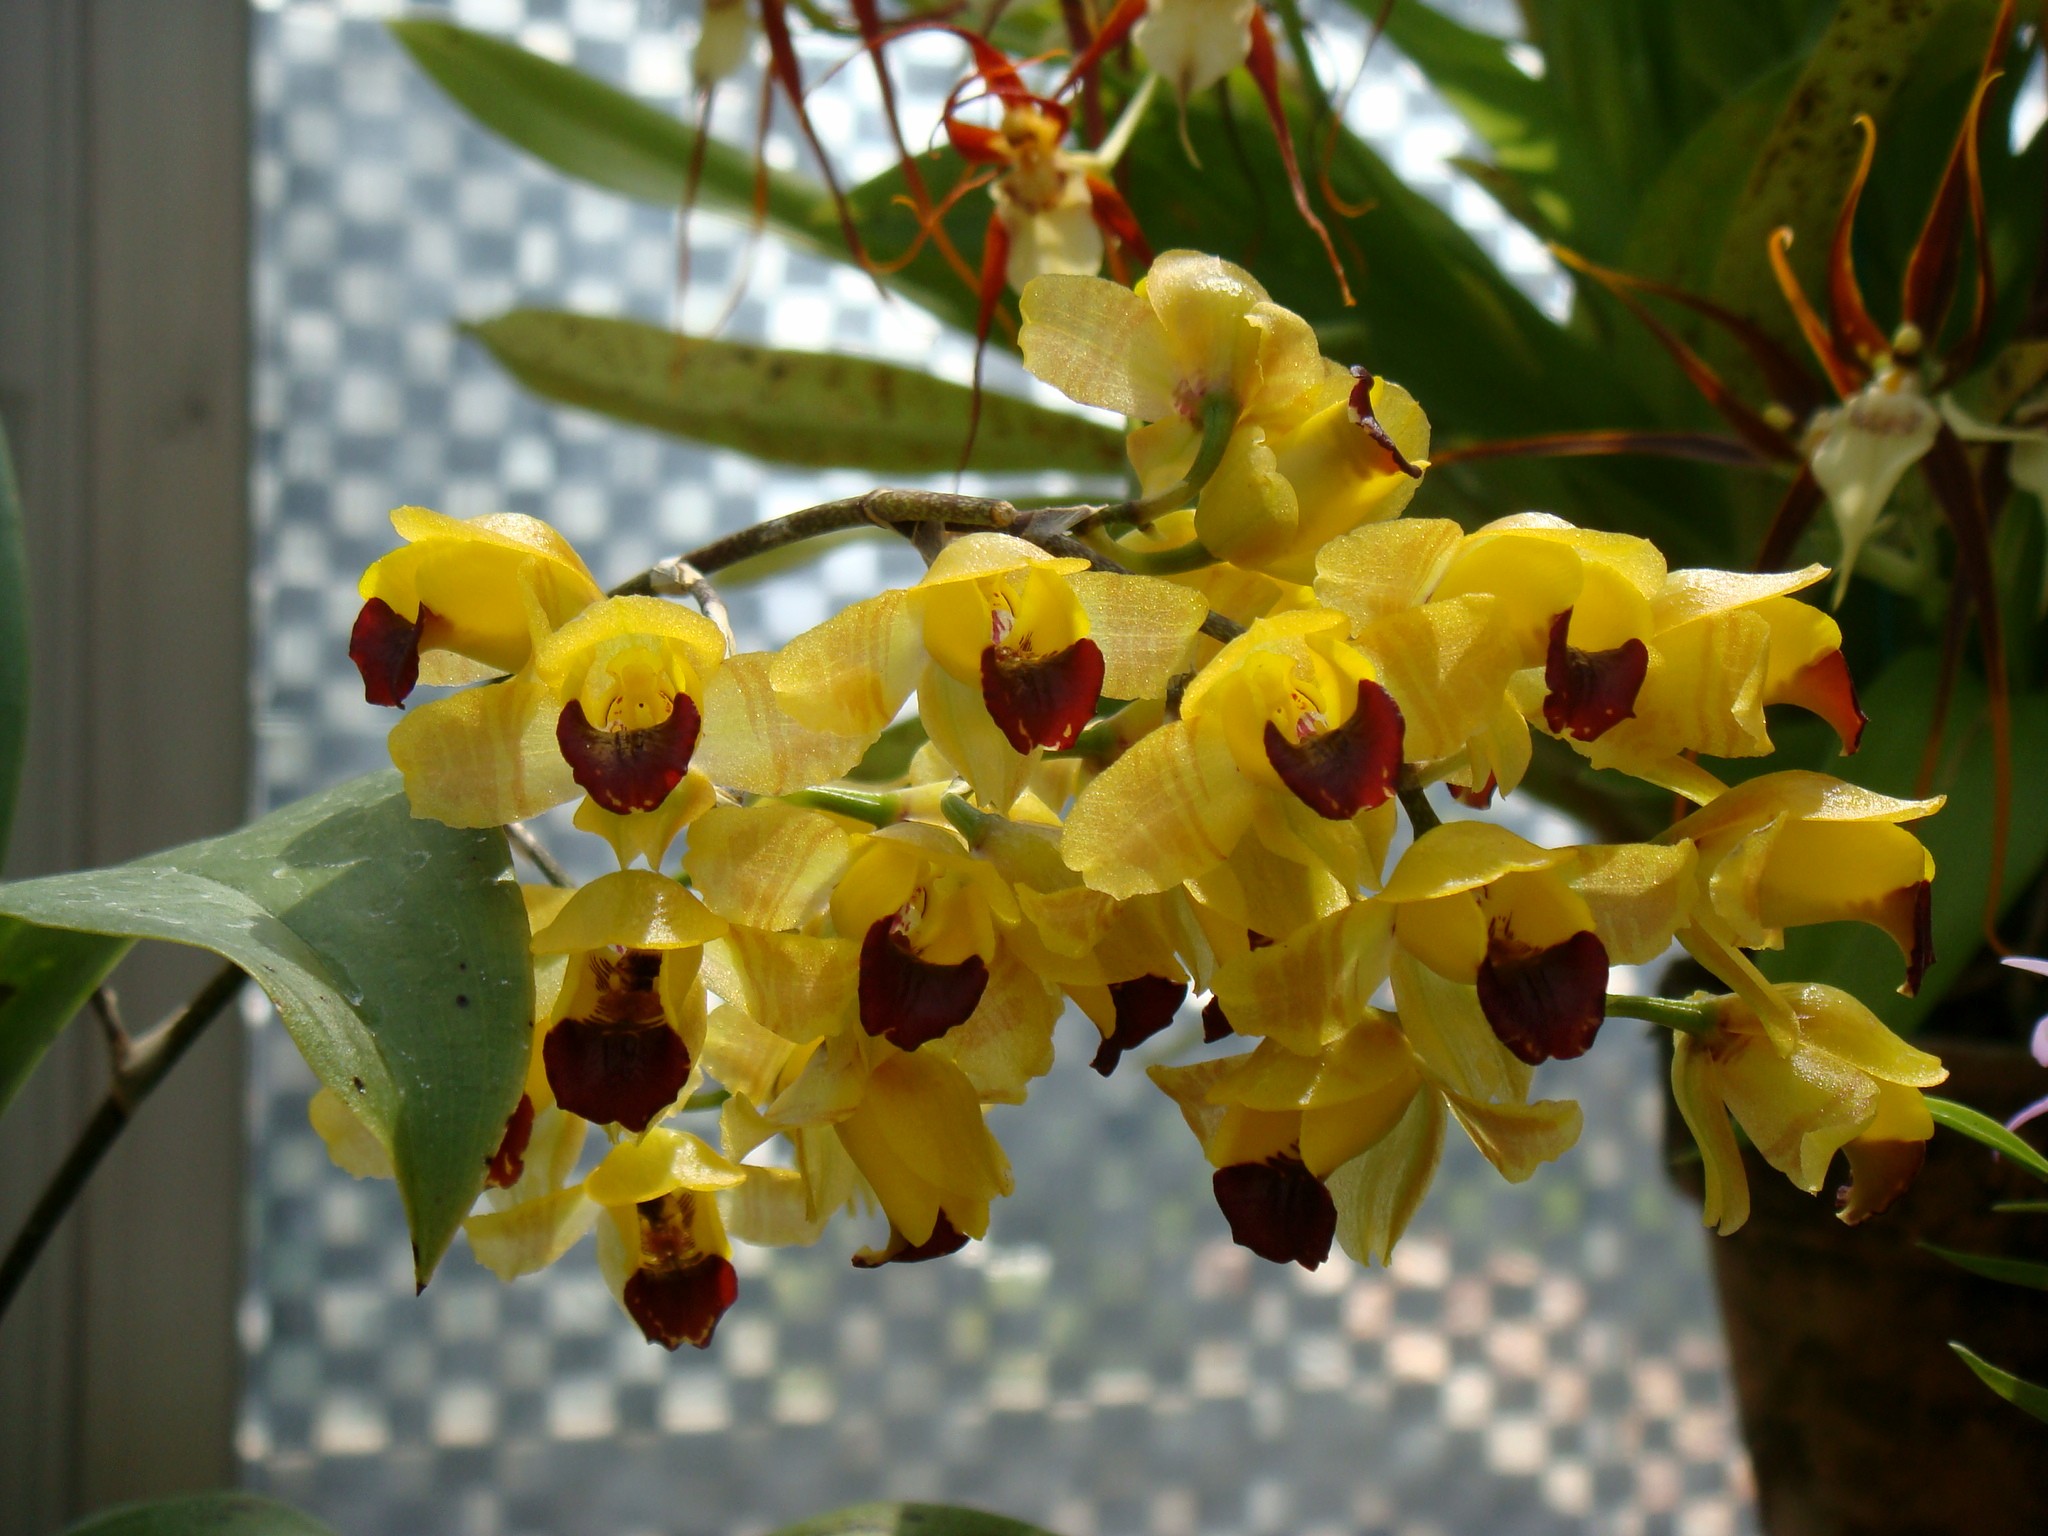  Ежовая орхидея расцвела в "Аптекарском огороде" - фото 4